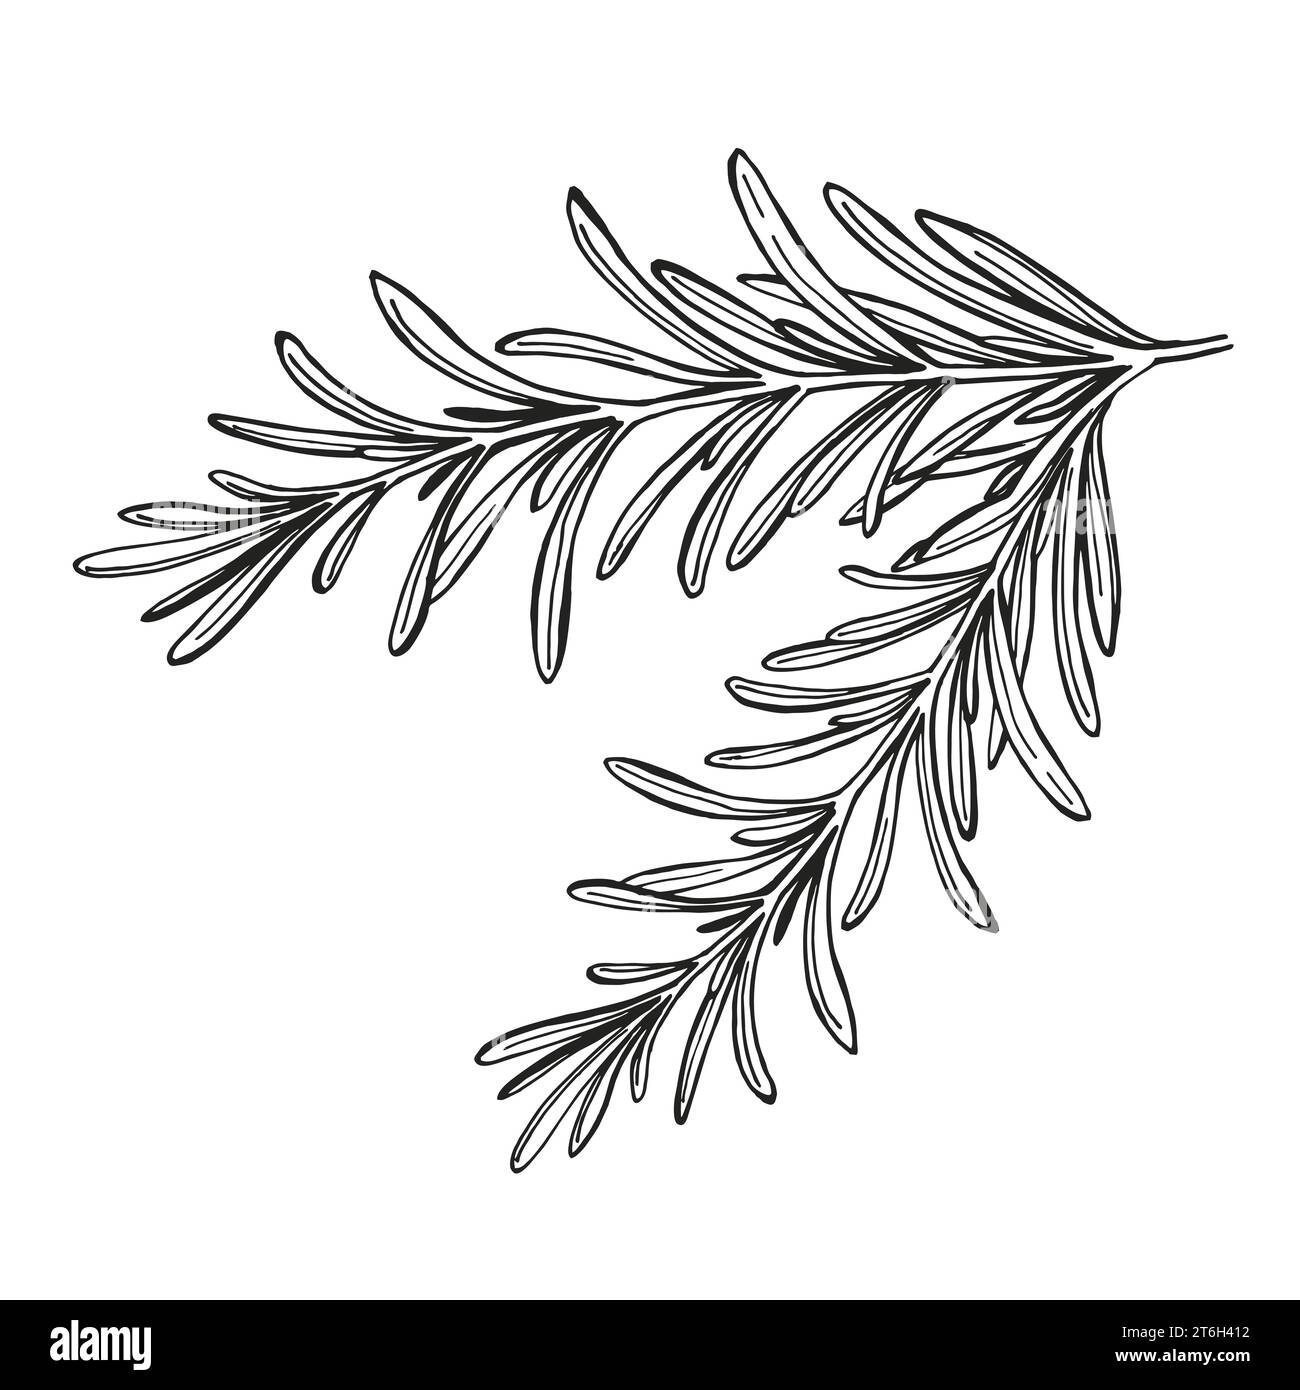 illustrazione vettoriale disegnata a mano di brunch al rosmarino, schizzo bianco e nero di erbe, pianta di spezie isolata su sfondo bianco, per decorazione domestica, cibo Illustrazione Vettoriale